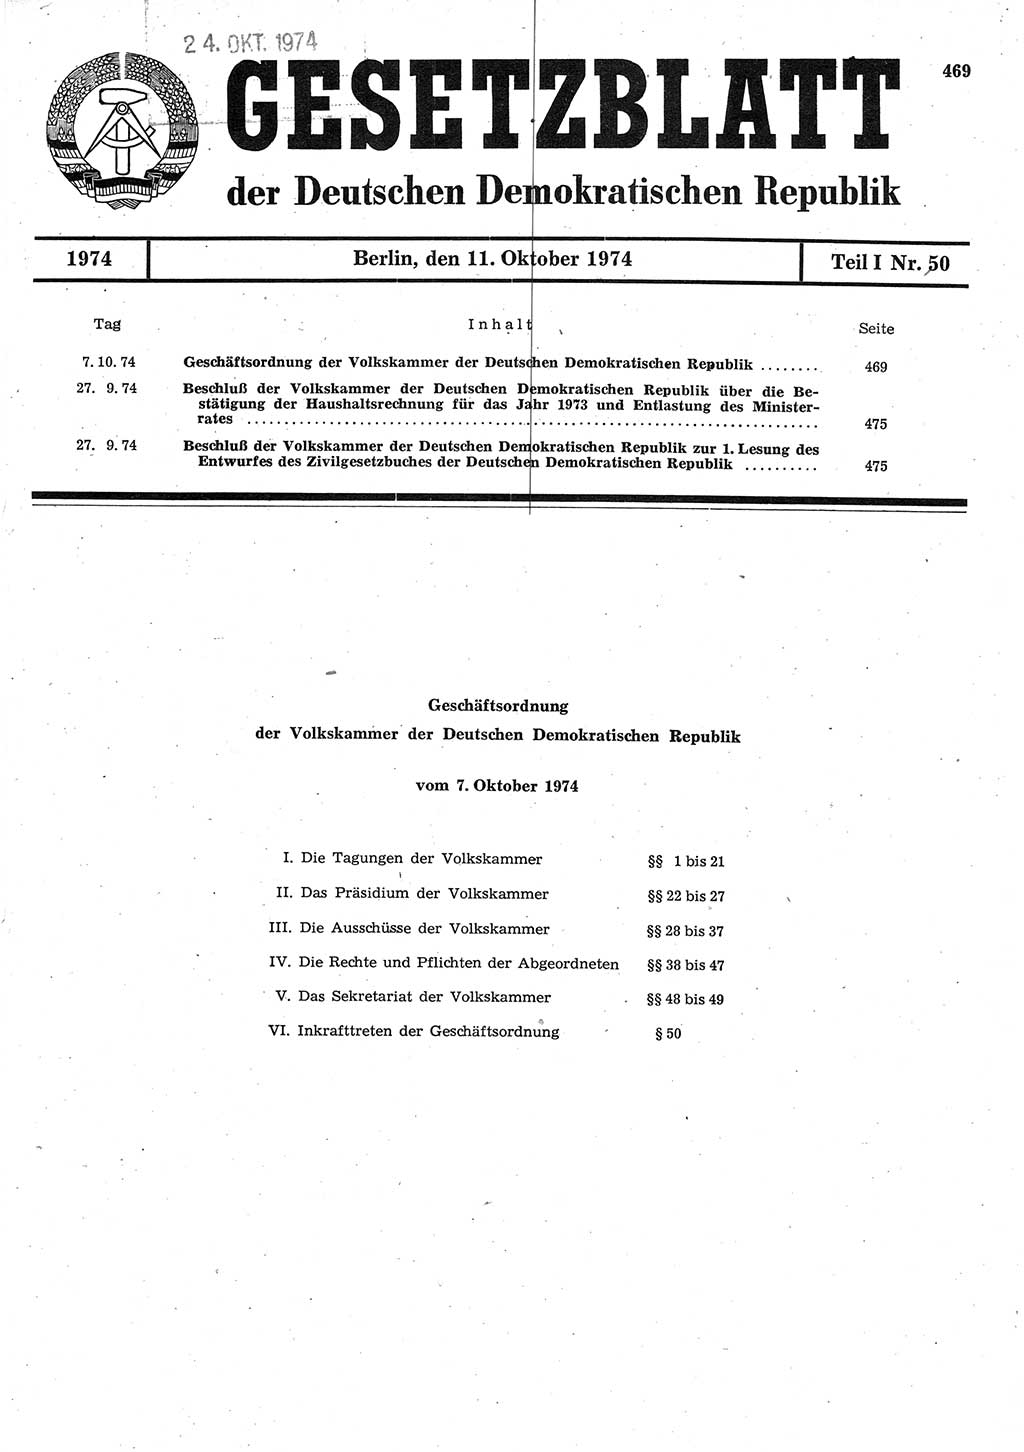 Gesetzblatt (GBl.) der Deutschen Demokratischen Republik (DDR) Teil Ⅰ 1974, Seite 469 (GBl. DDR Ⅰ 1974, S. 469)